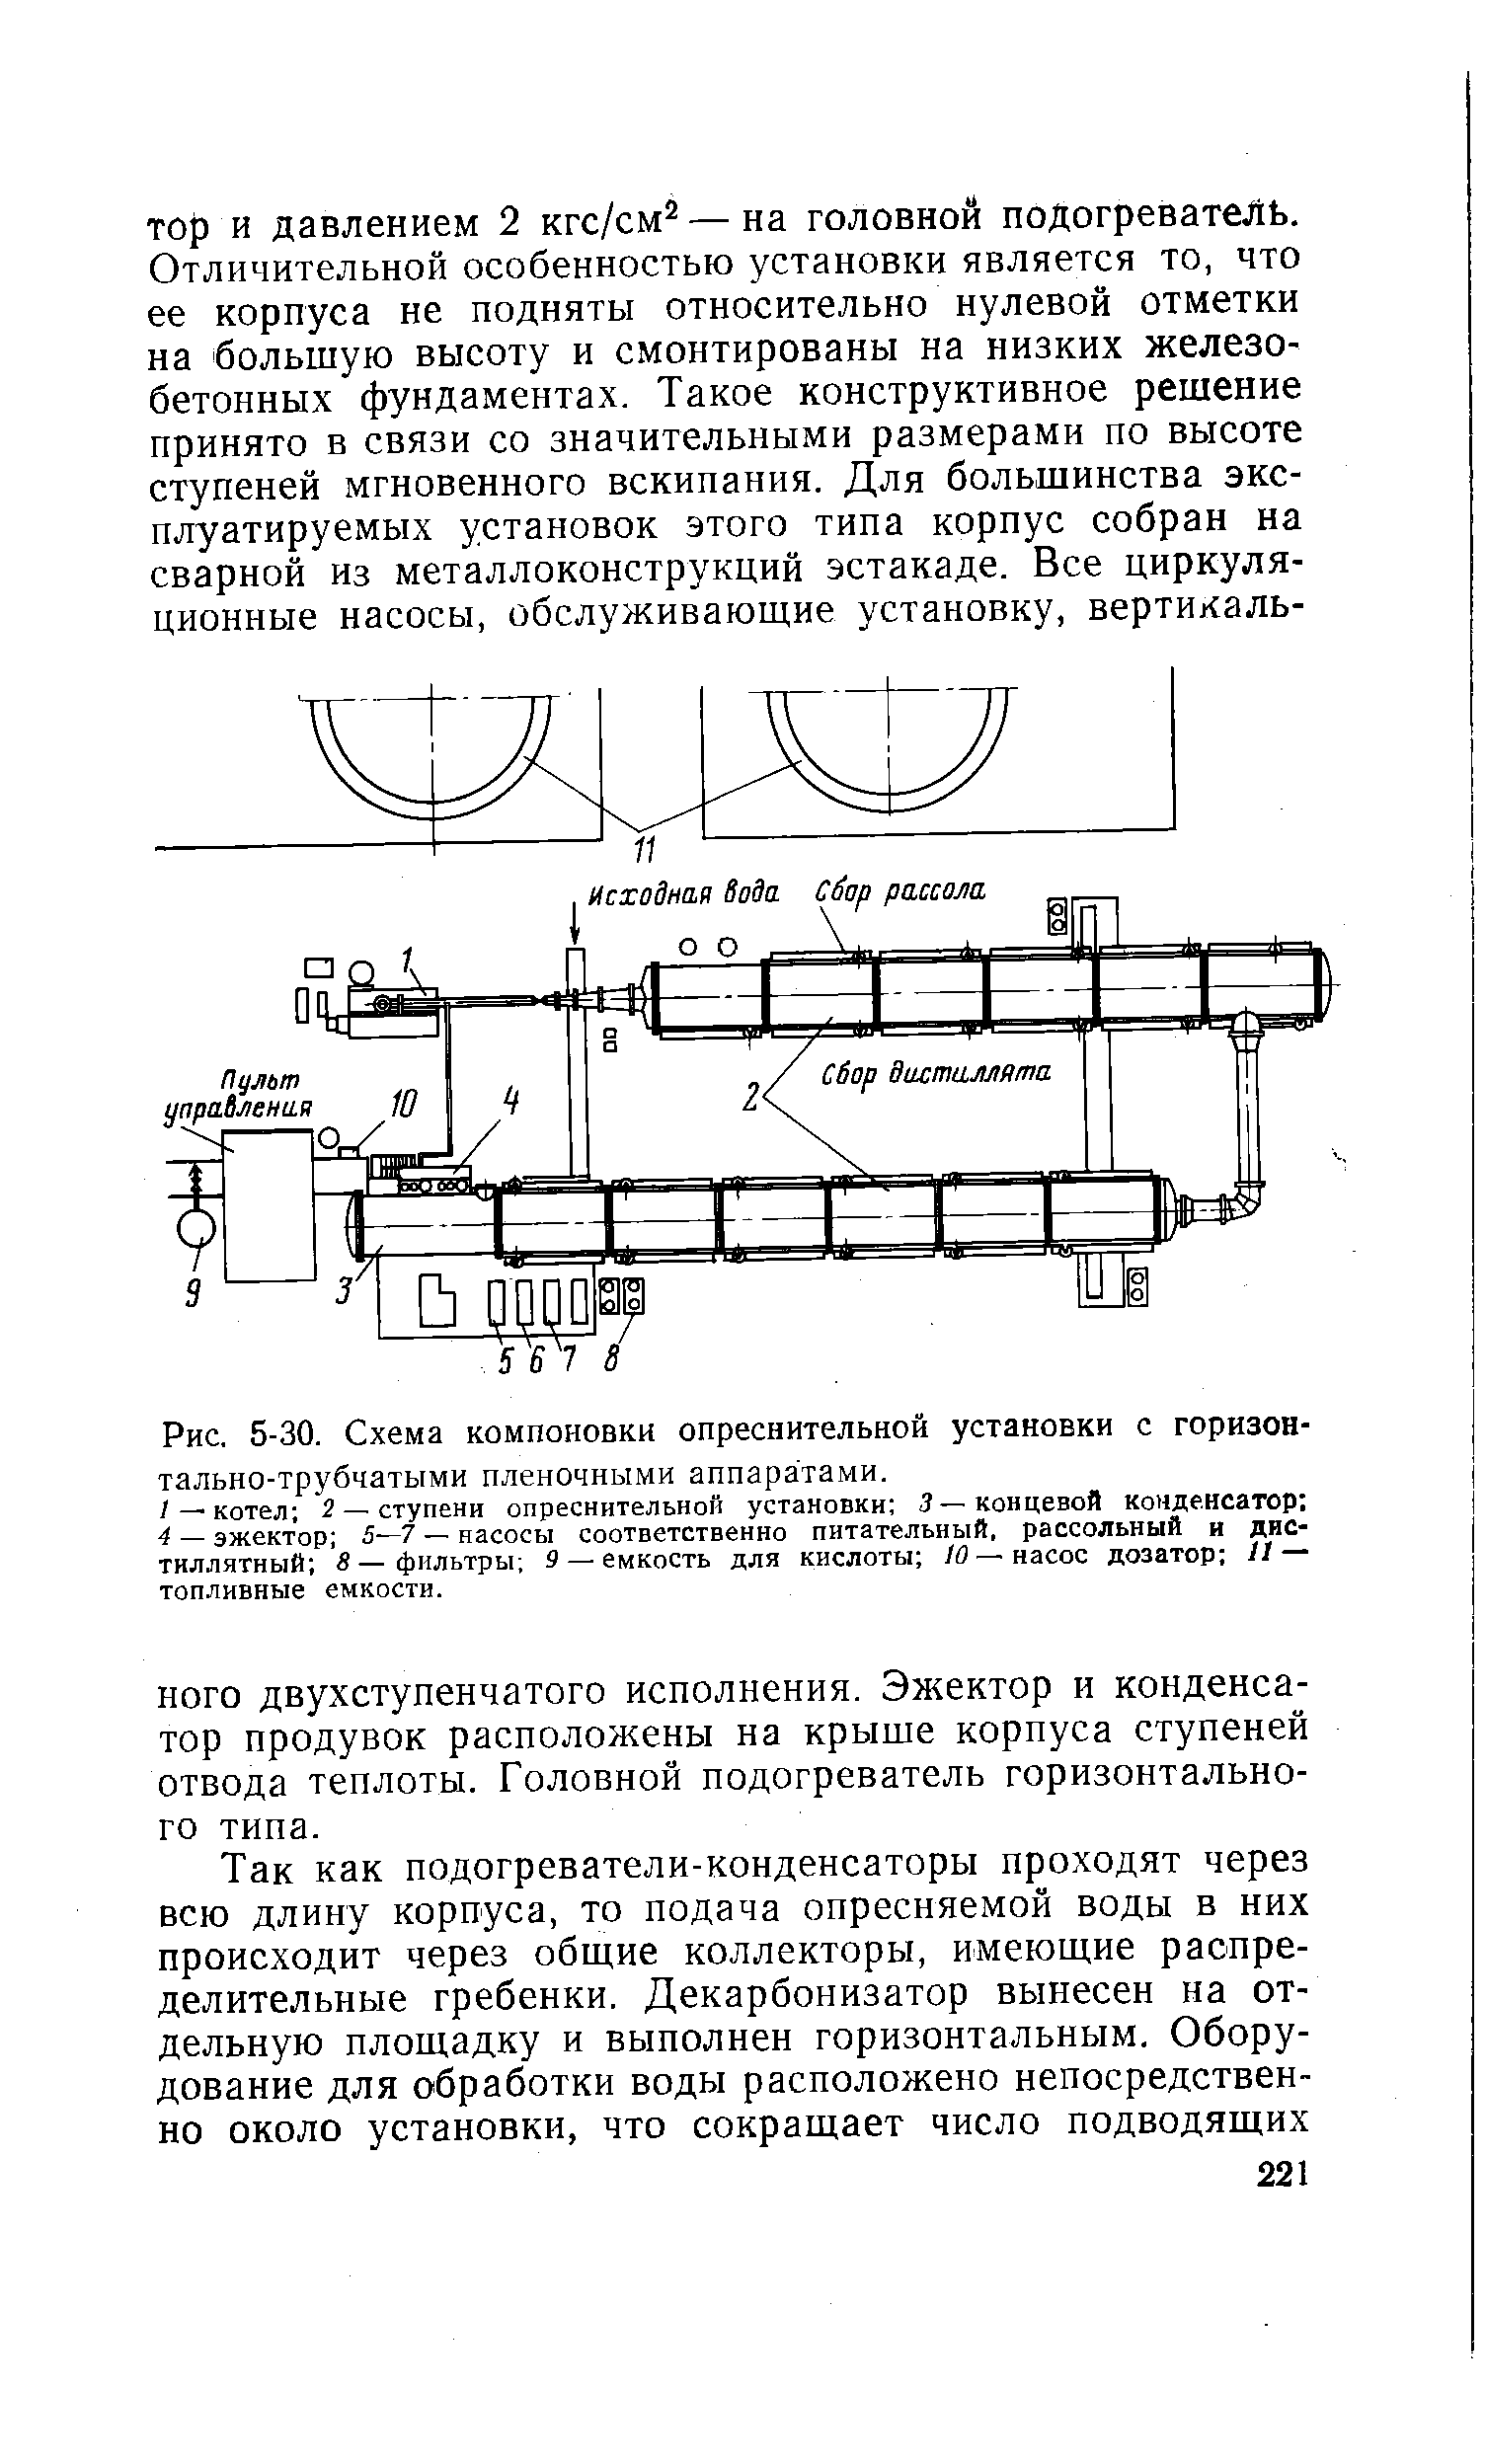 Рис. 5-30. Схема компоновки опреснительной установки с горизонтально-трубчатыми пленочными аппаратами.
